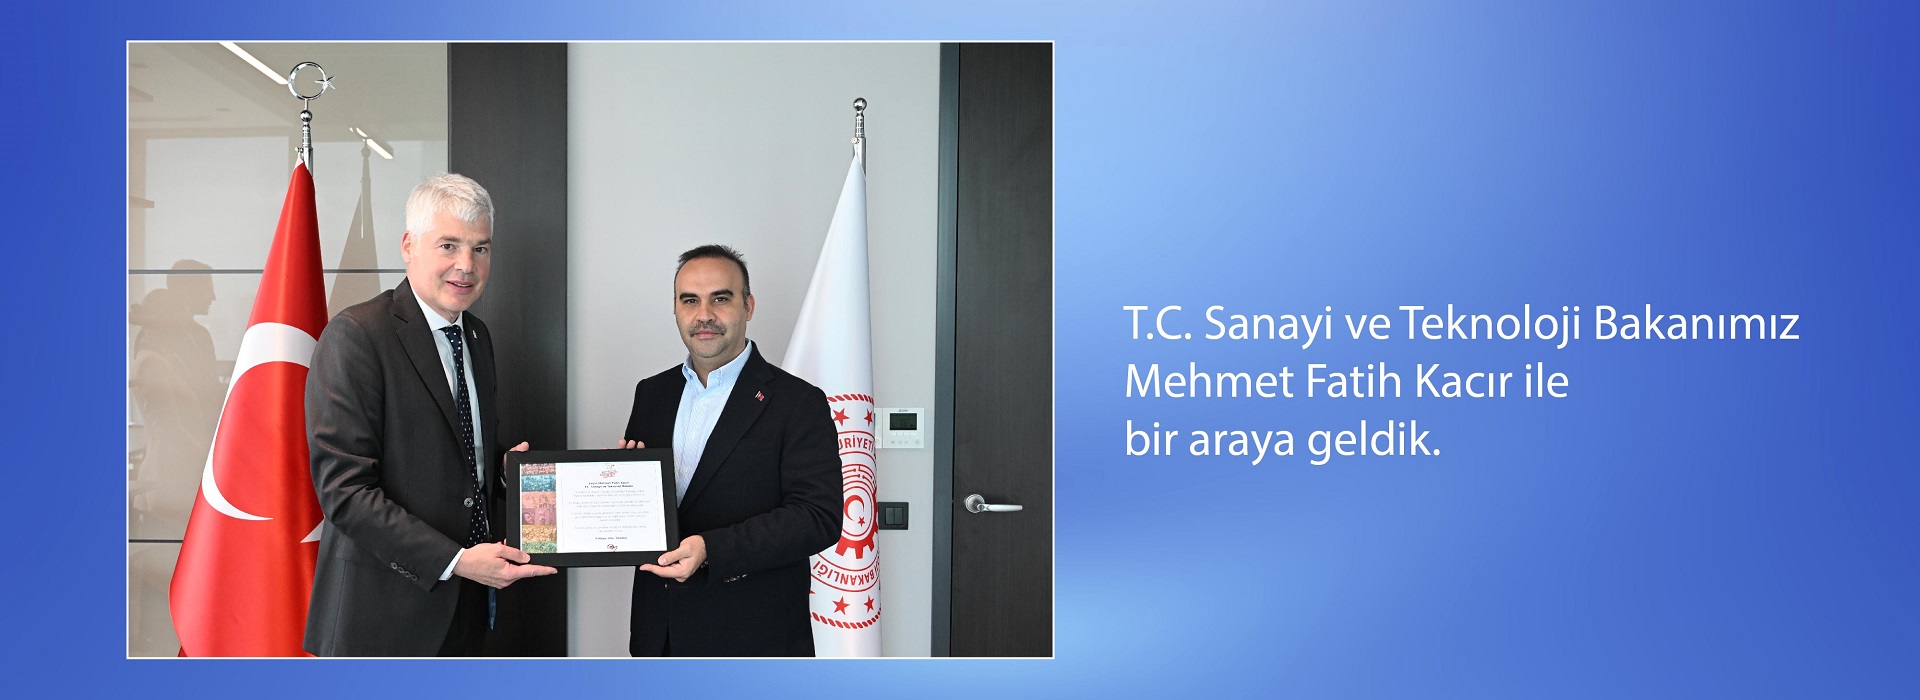 T.C. Sanayi ve Teknoloji Bakanımız Mehmet Fatih Kacır ile bir araya geldik.